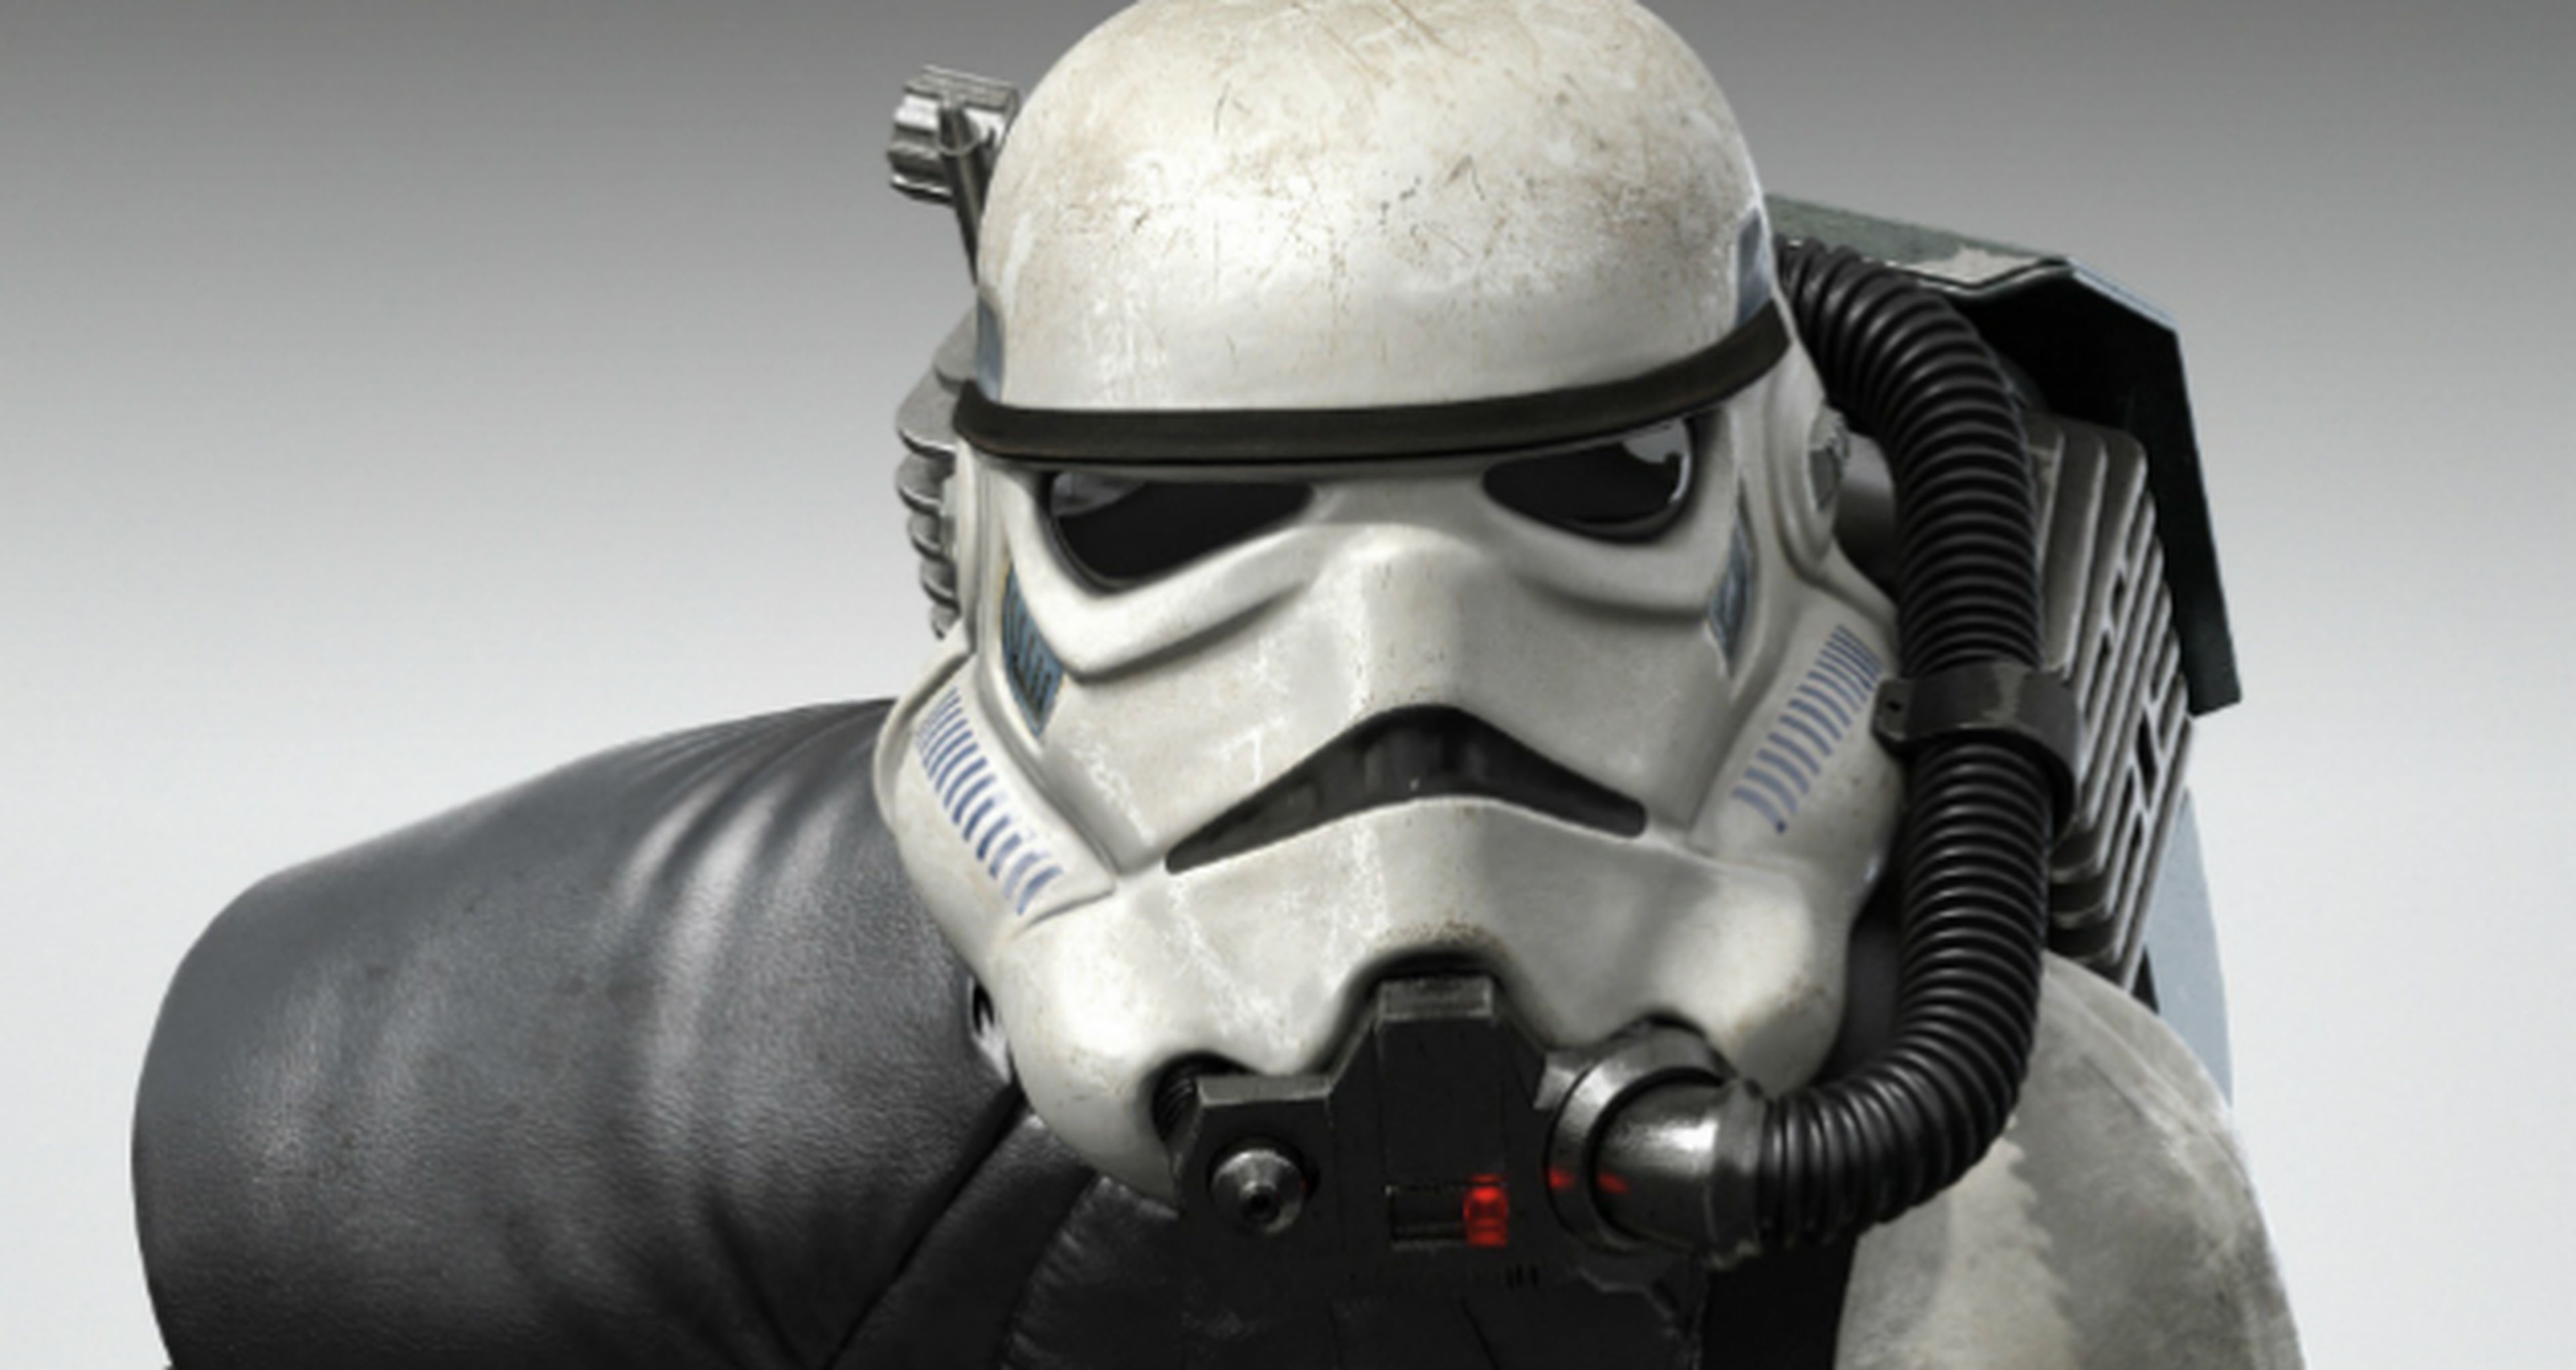 Star Wars Battlefront, tamaño de instalación en PS4, Xbox One y PC